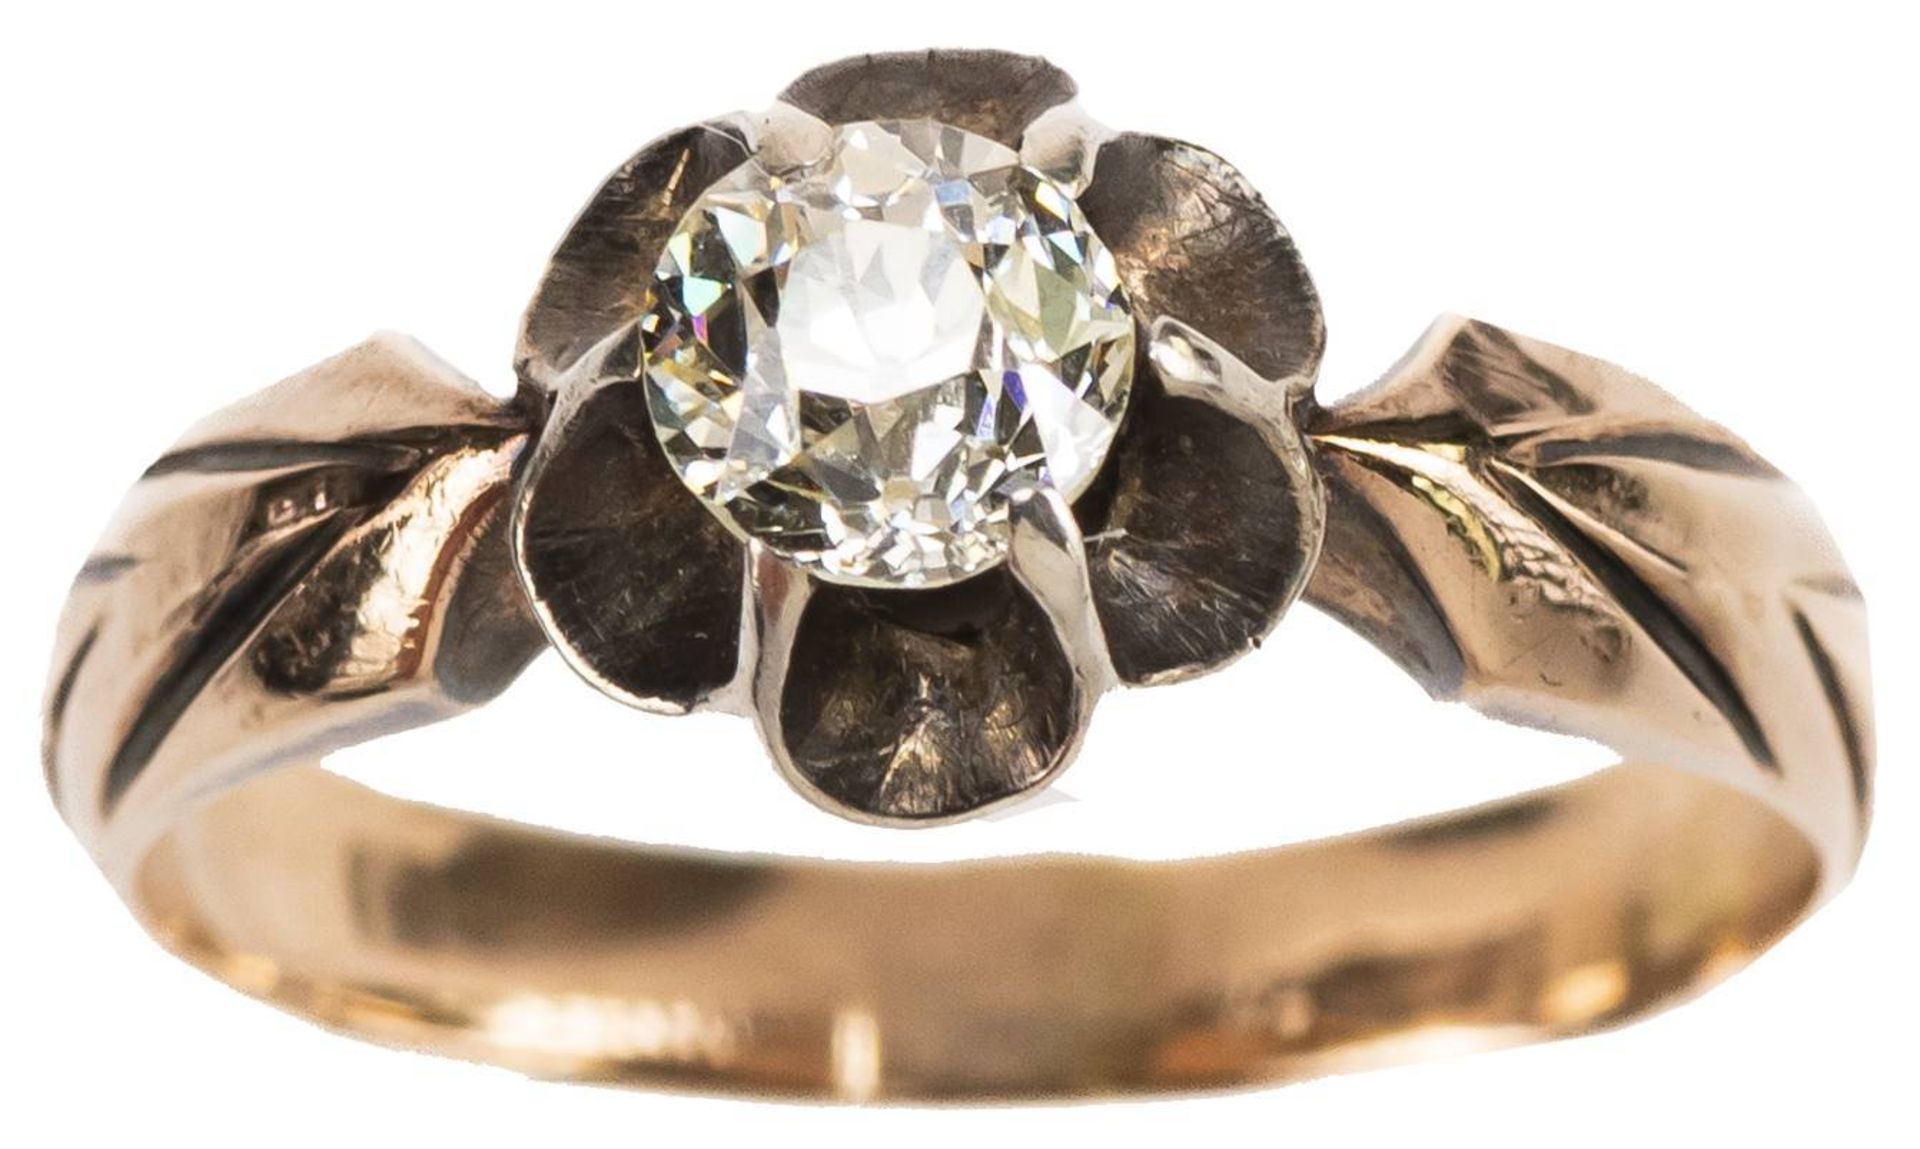 Diamant Solitär Ring, 585 Rotgold, altschliff Diamant von ca. 0,4 ct, sichtbare Lötstelle, RW 50, - Image 2 of 4